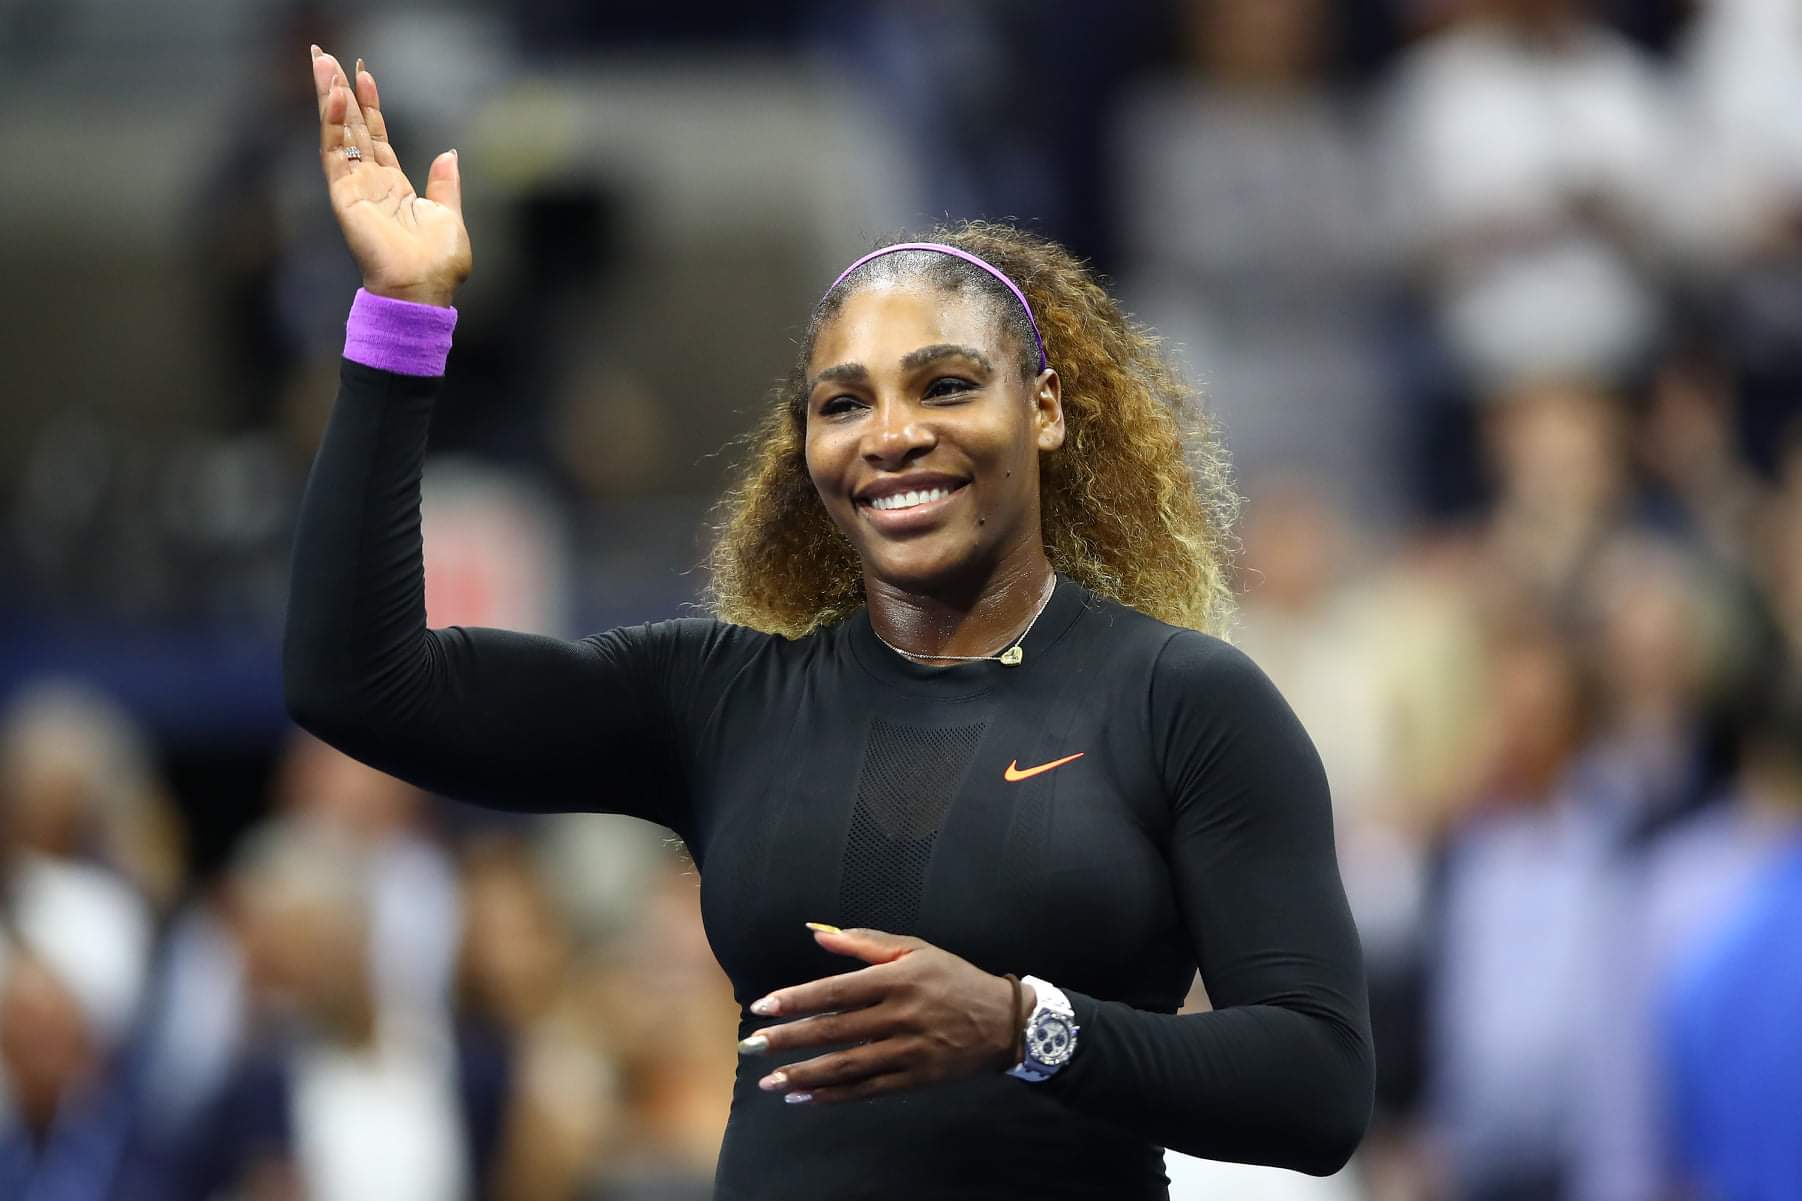 O segredo de Serena Williams para ter sucesso com investimentos de